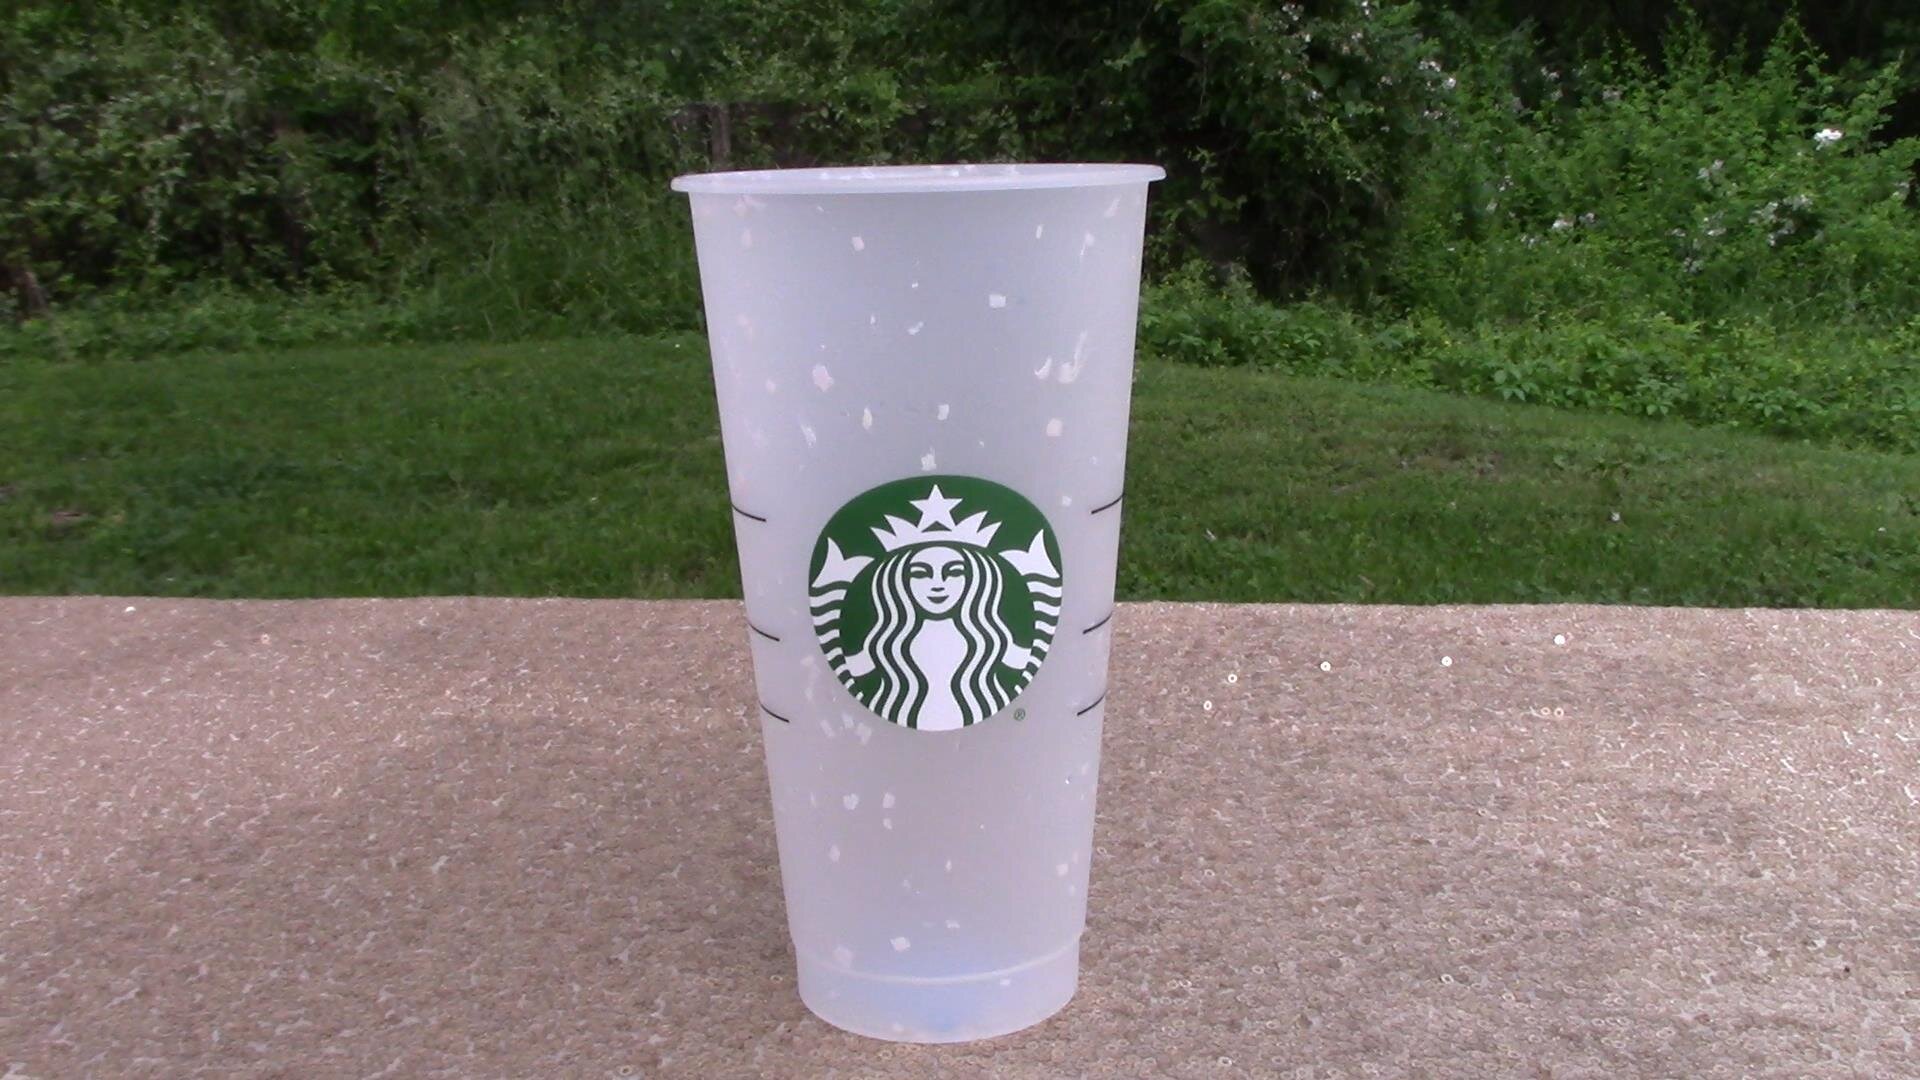 Matching reusable Starbucks cup set!